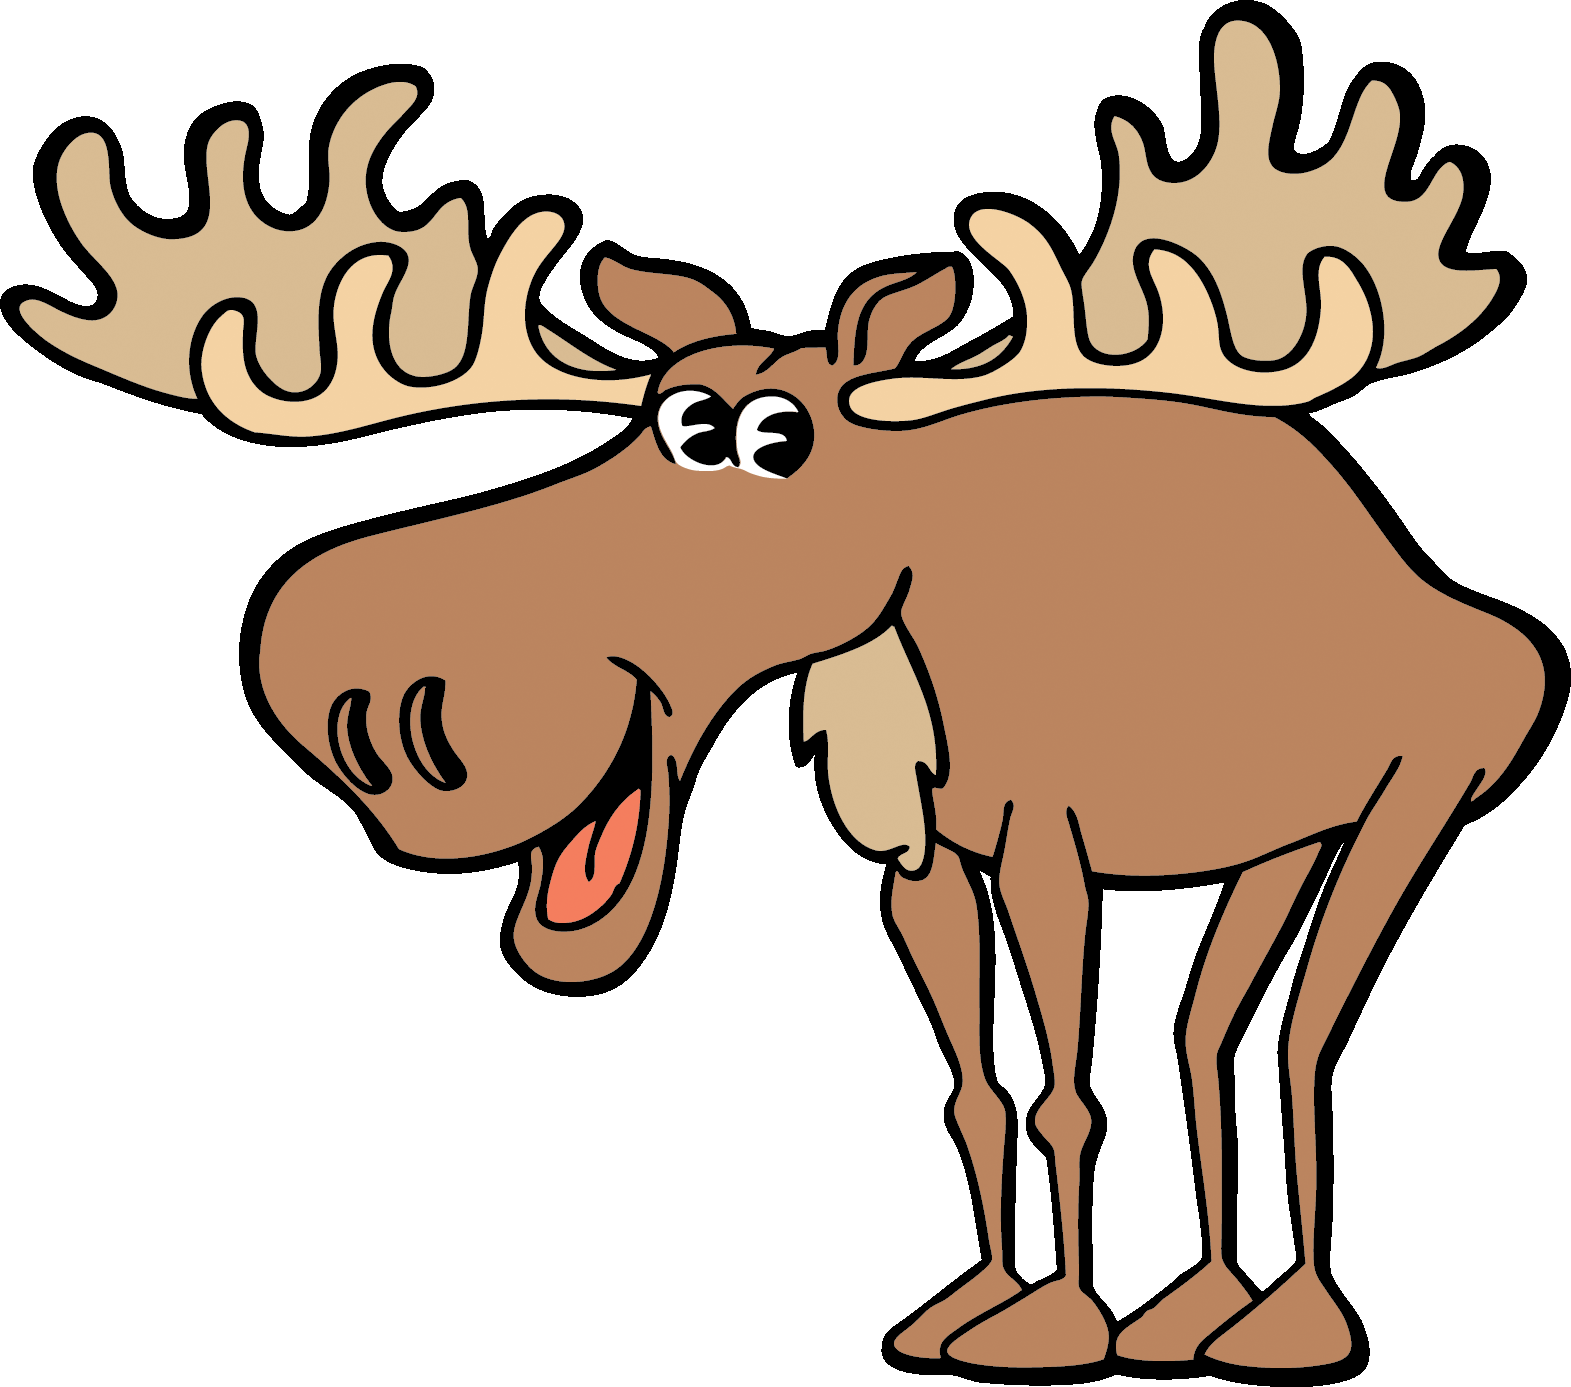 Lumberjack clipart reindeer. Woodsy the moose alaska